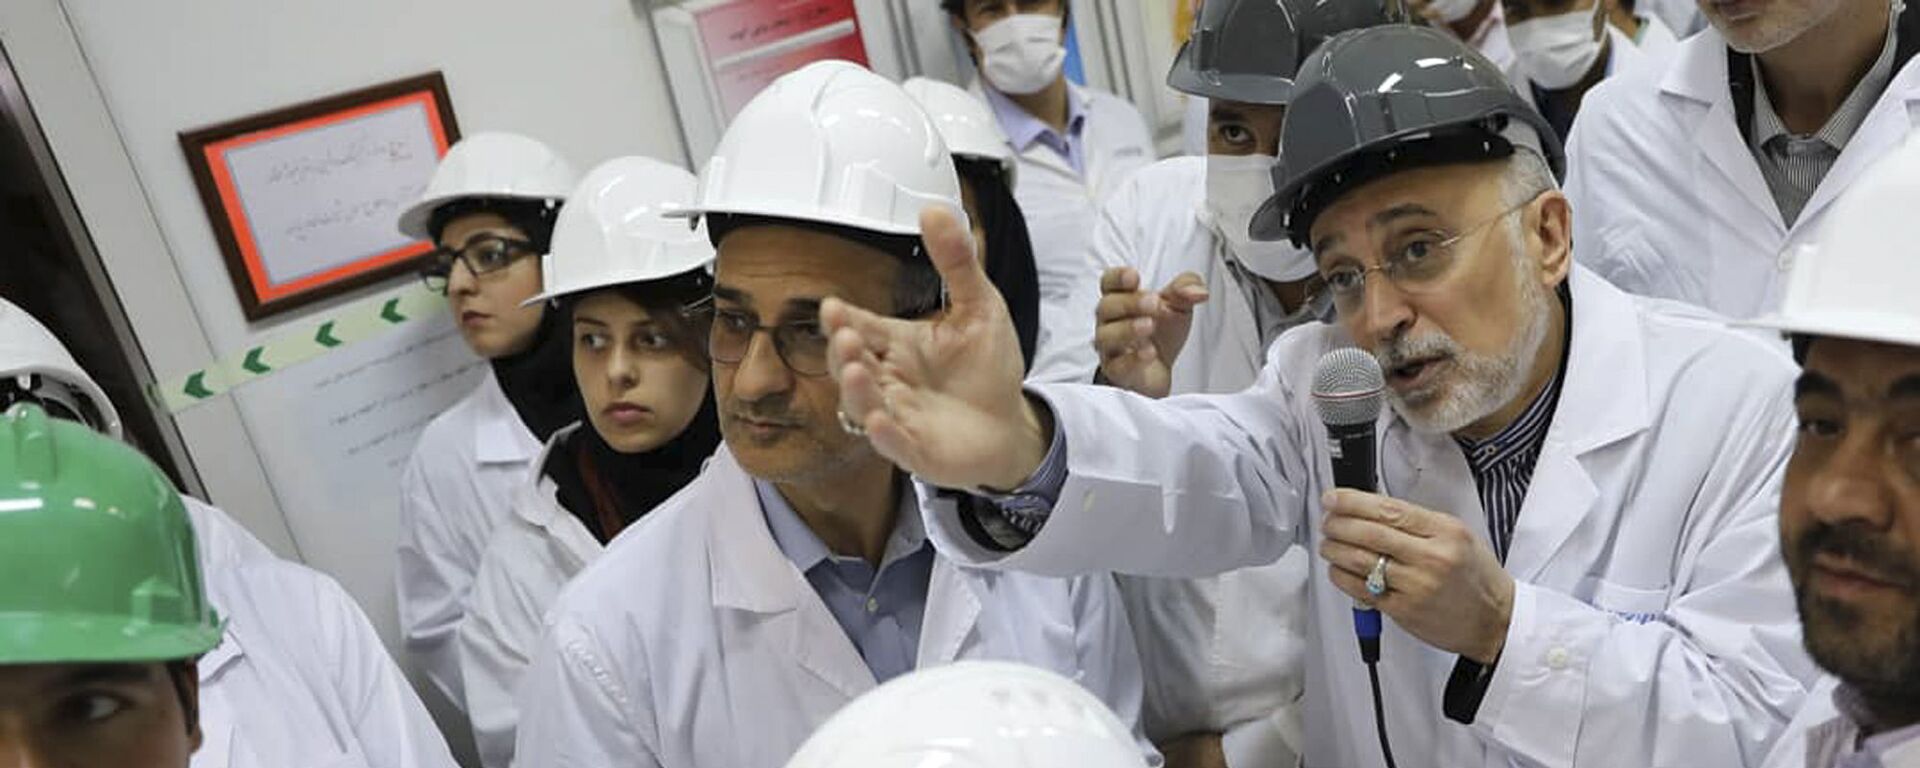 علي أكبر صالحي رئيس منظمة الطاقة النووية الإيرانية يتحدث مع وسائل الإعلام أثناء زيارته لمرفق تخصيب نطنز وسط إيران - سبوتنيك عربي, 1920, 18.04.2021